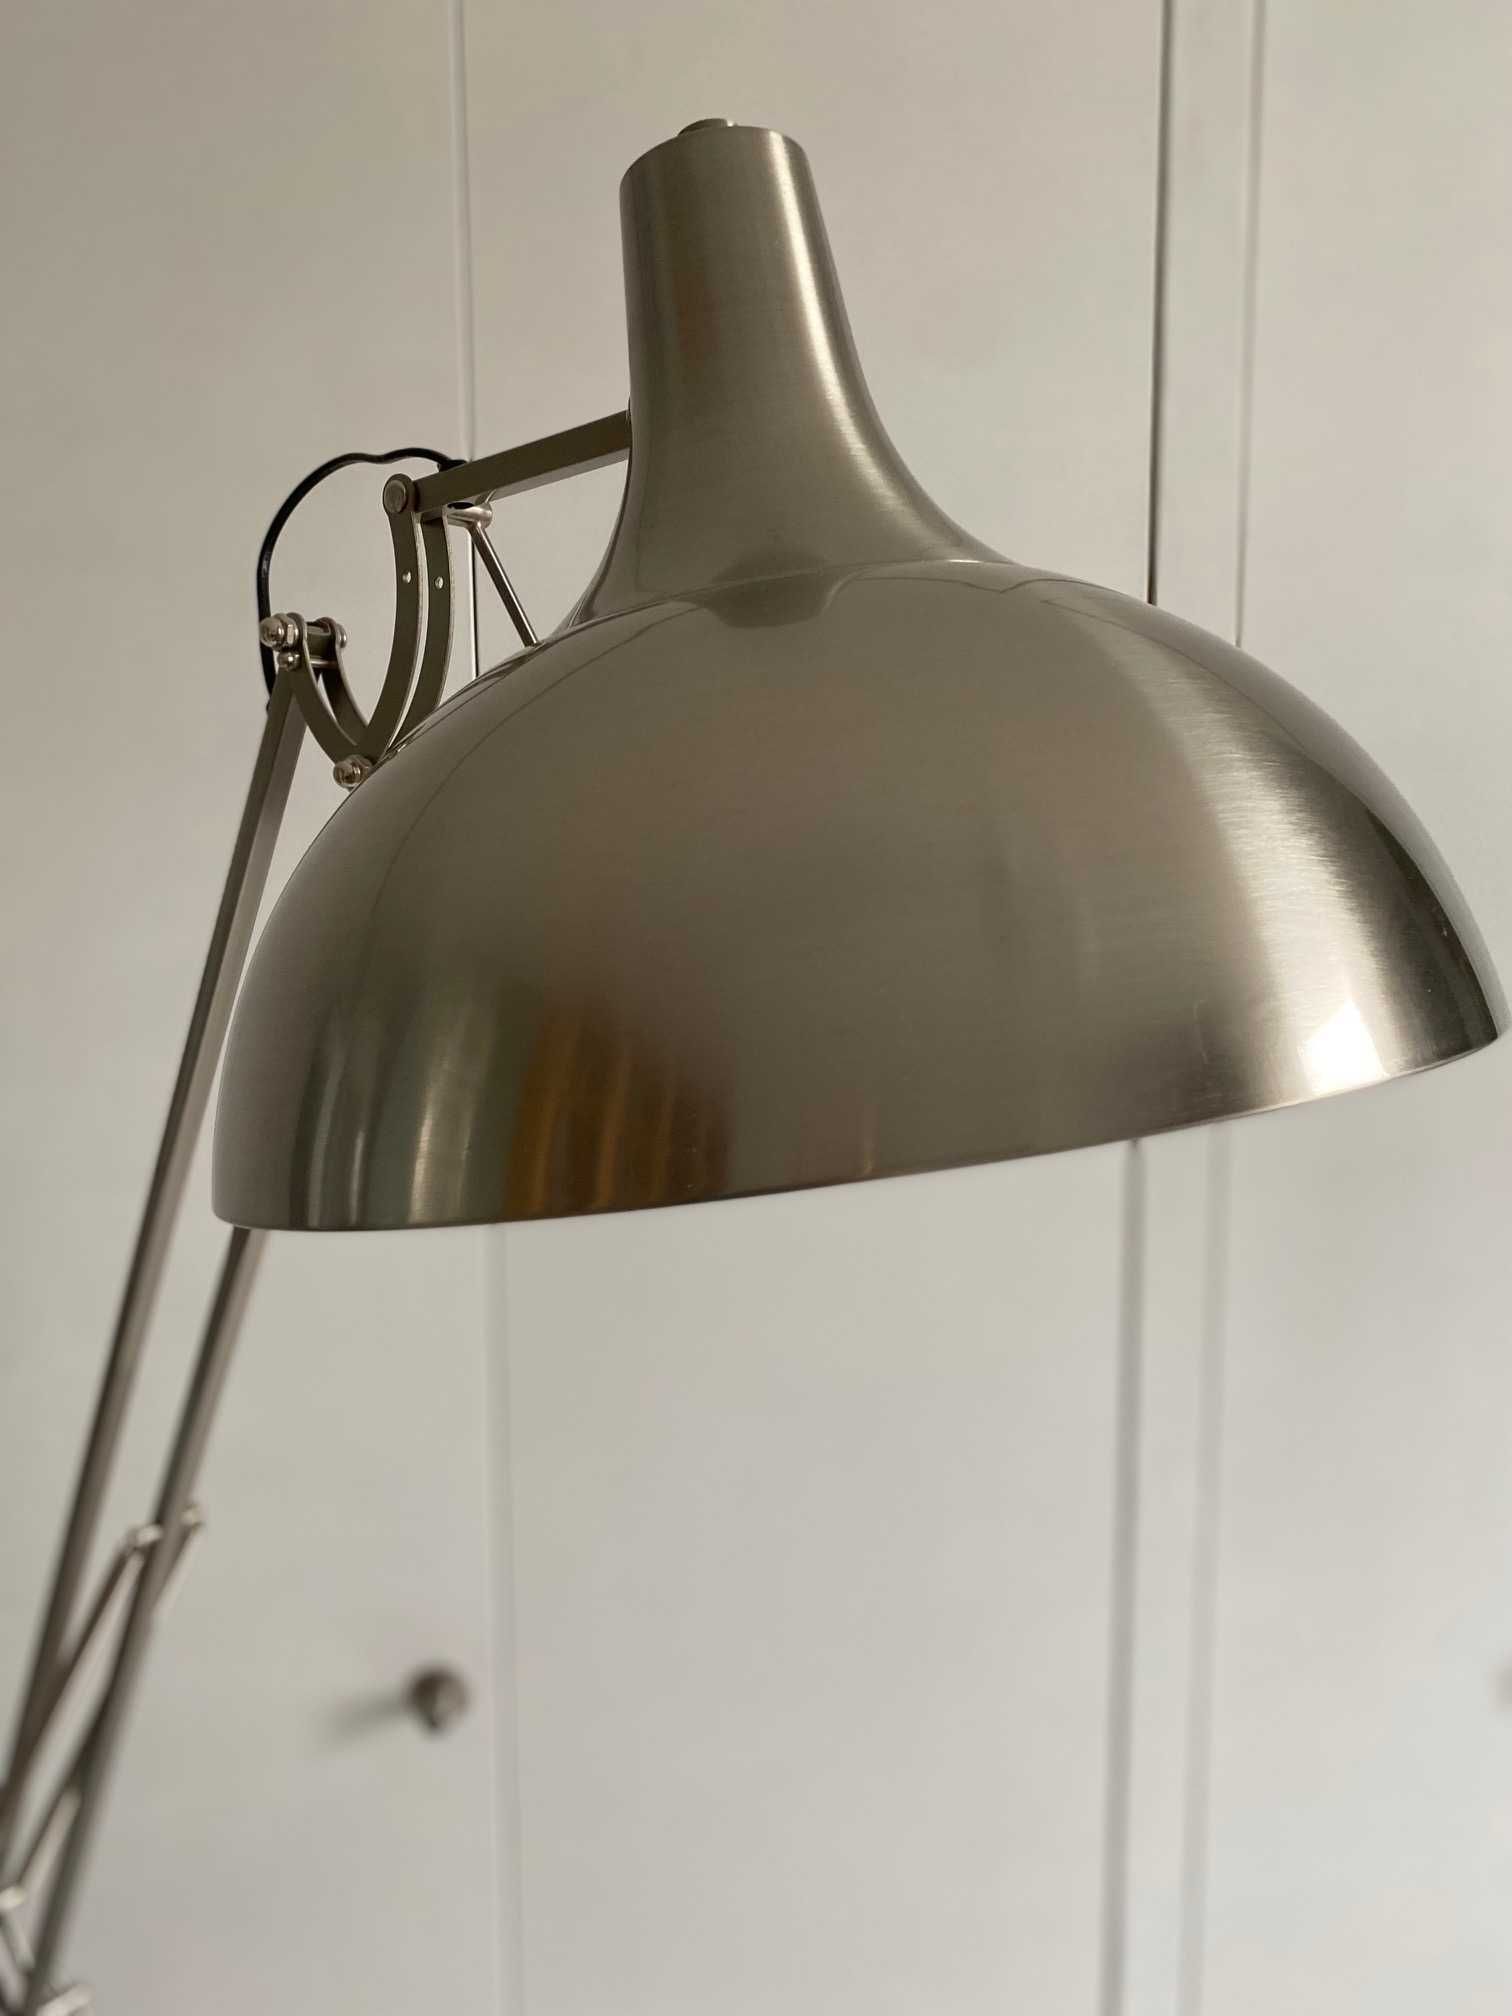 Lampa metalowa stojąca, z ruchomym ramieniem, w stylu industrialnym,